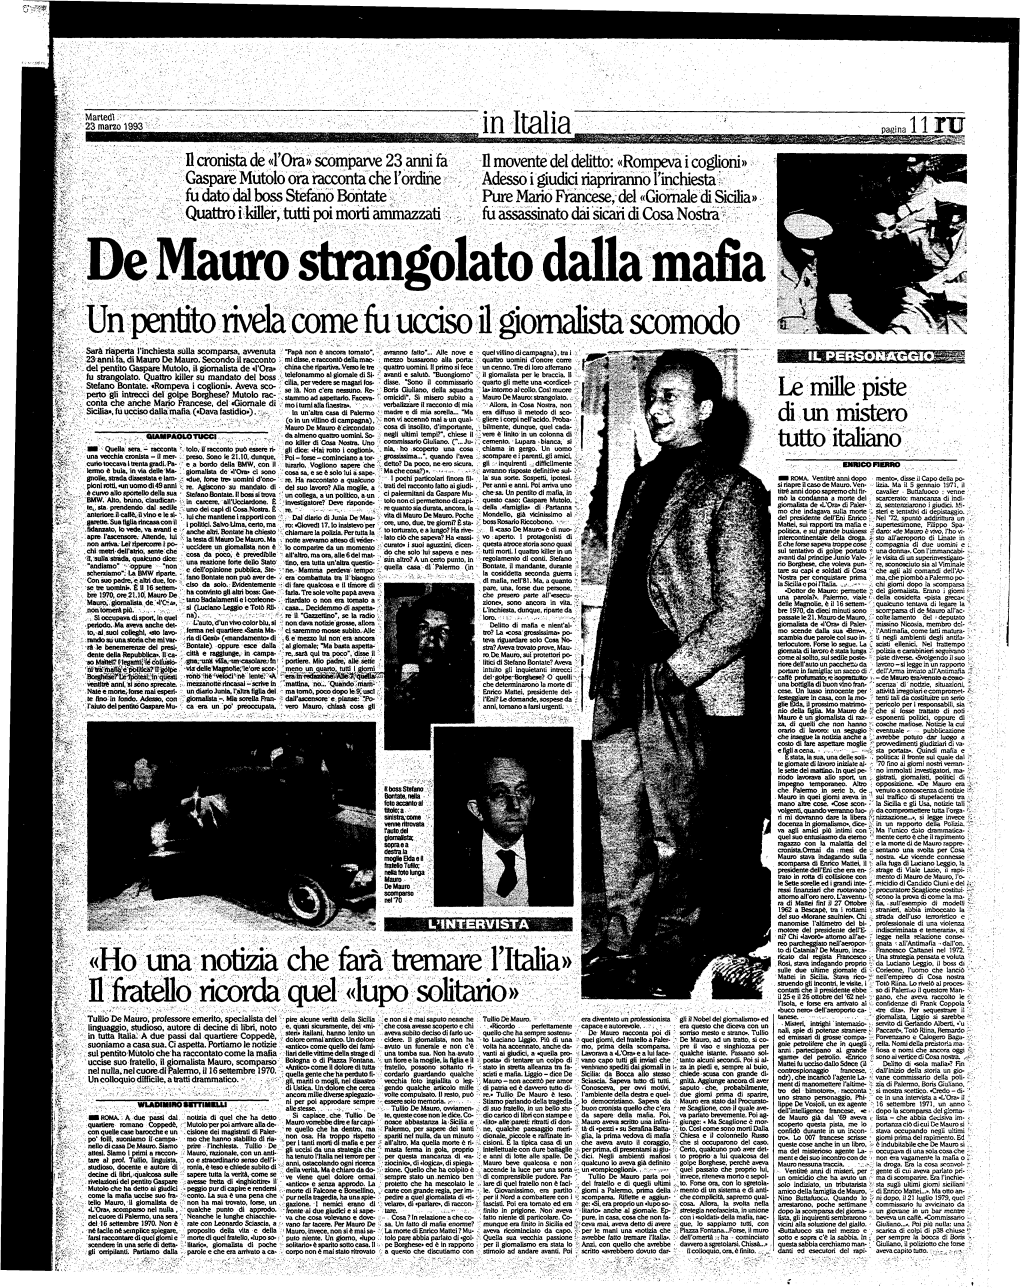 De Mauro Strangolato Dalla Mafia Un Pentito Rivelacom E Fu Ucciso Il Giornalista Scomodo